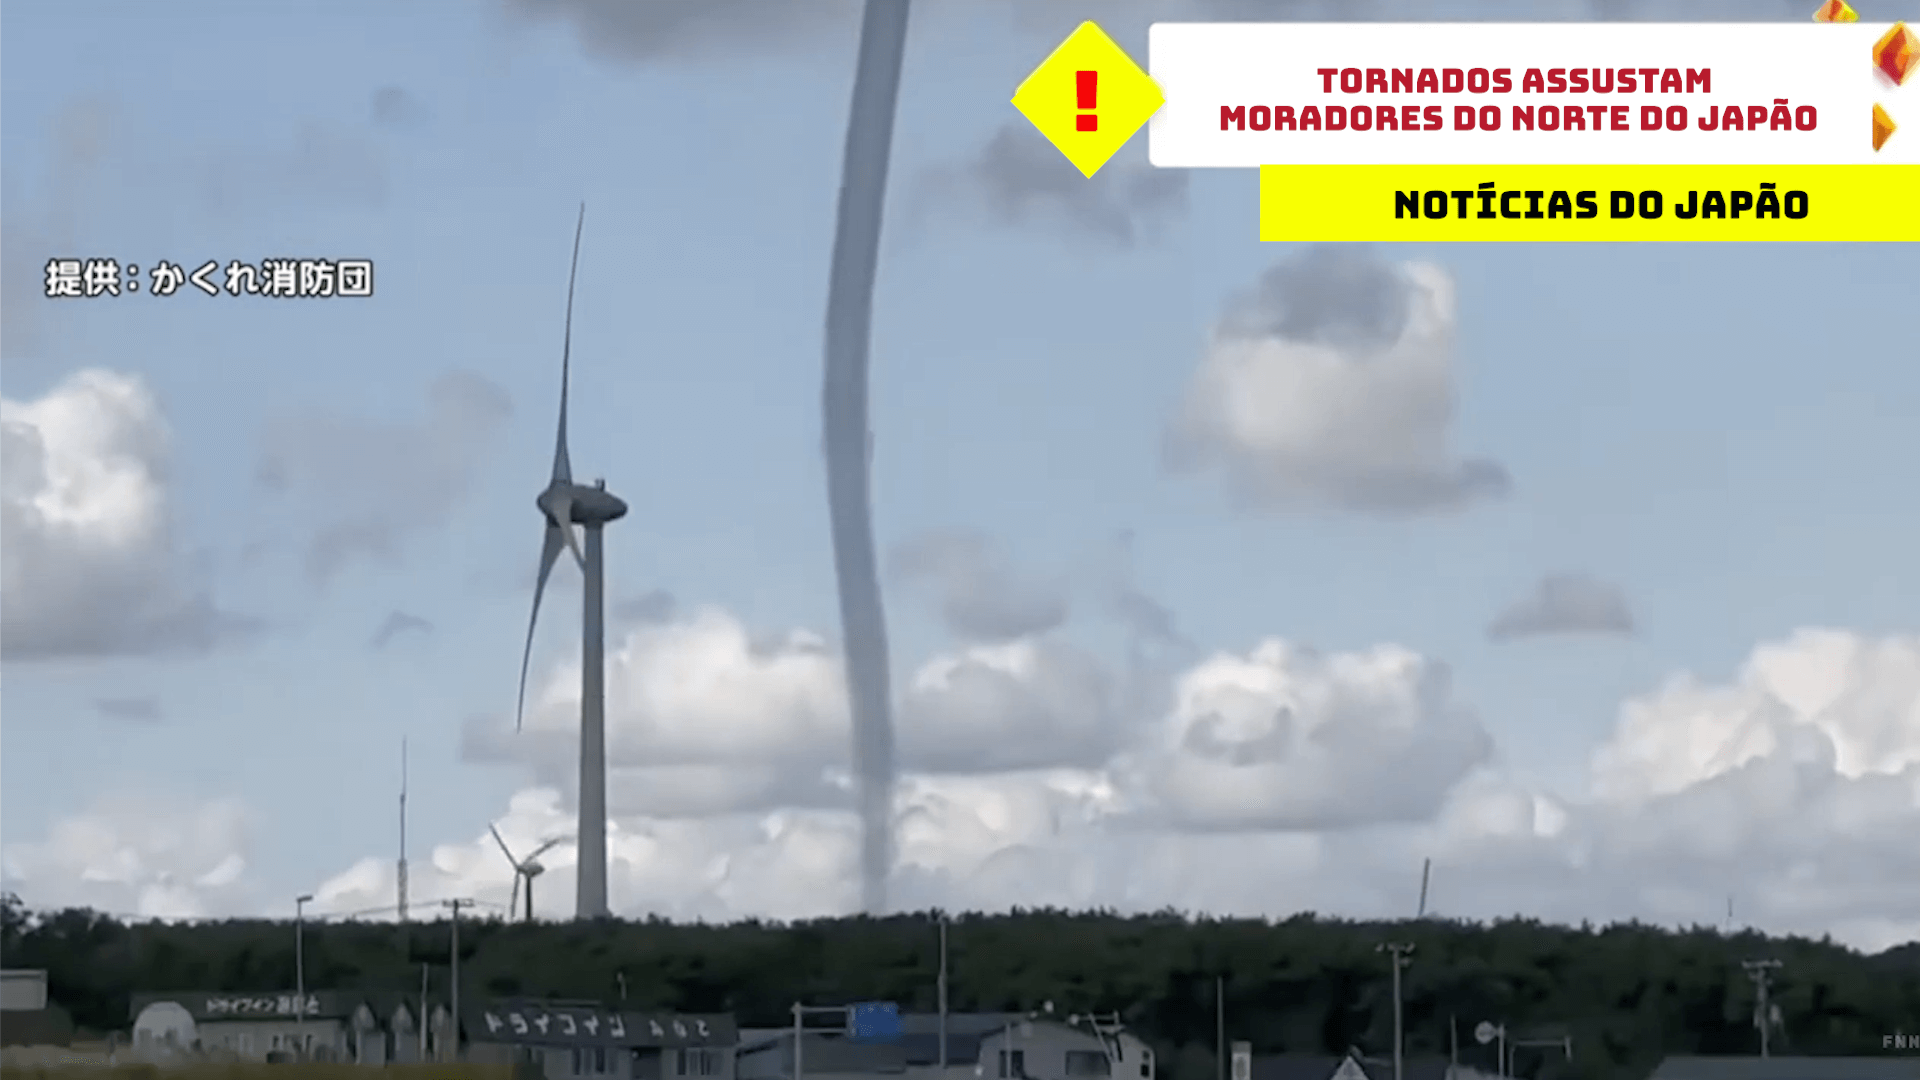 Tornados assustam moradores do norte do Japão 